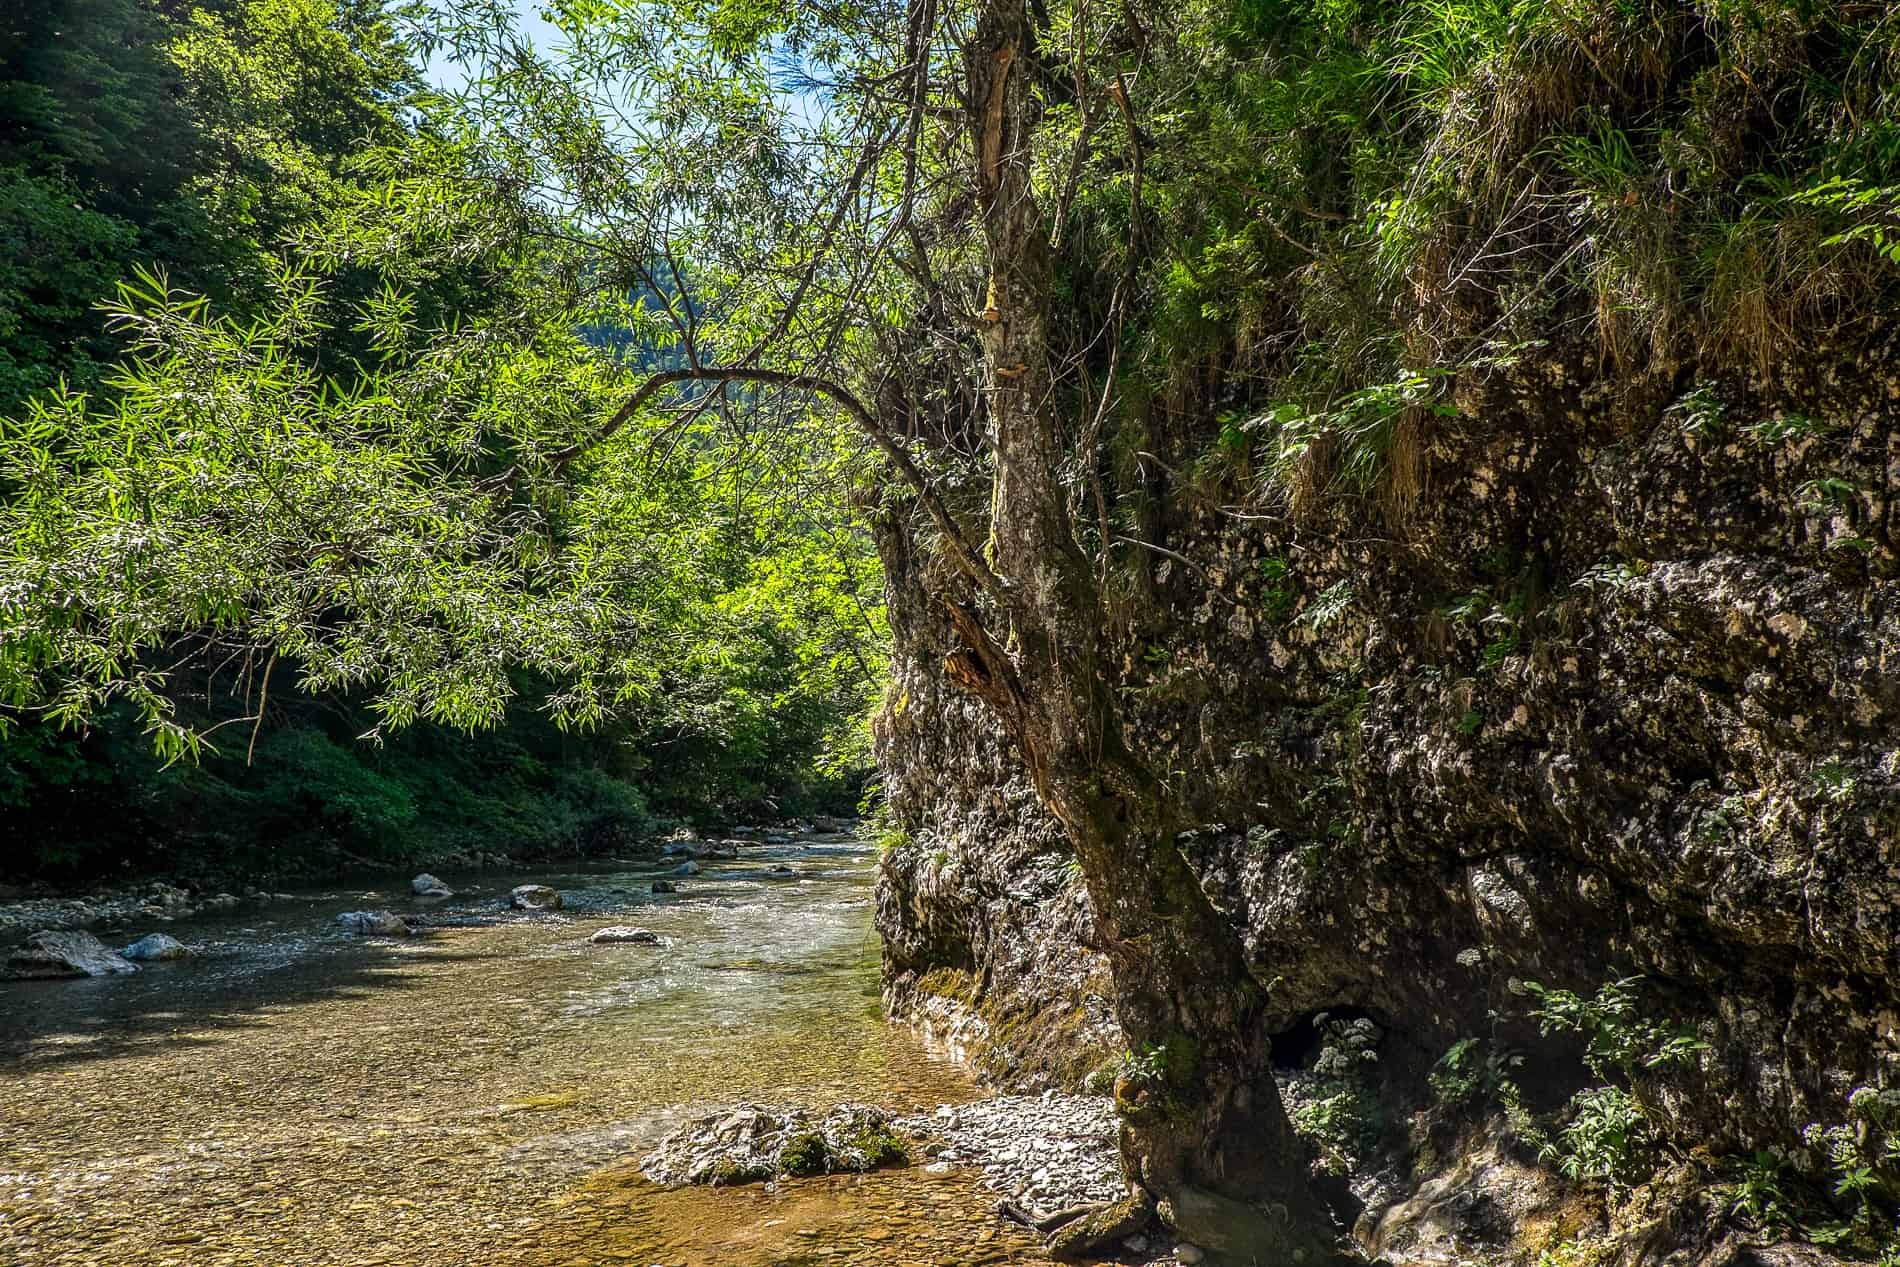 The Iški Vintgar gorge on the River Iška in the Iški Morost Nature Reserve, Slovenia. 